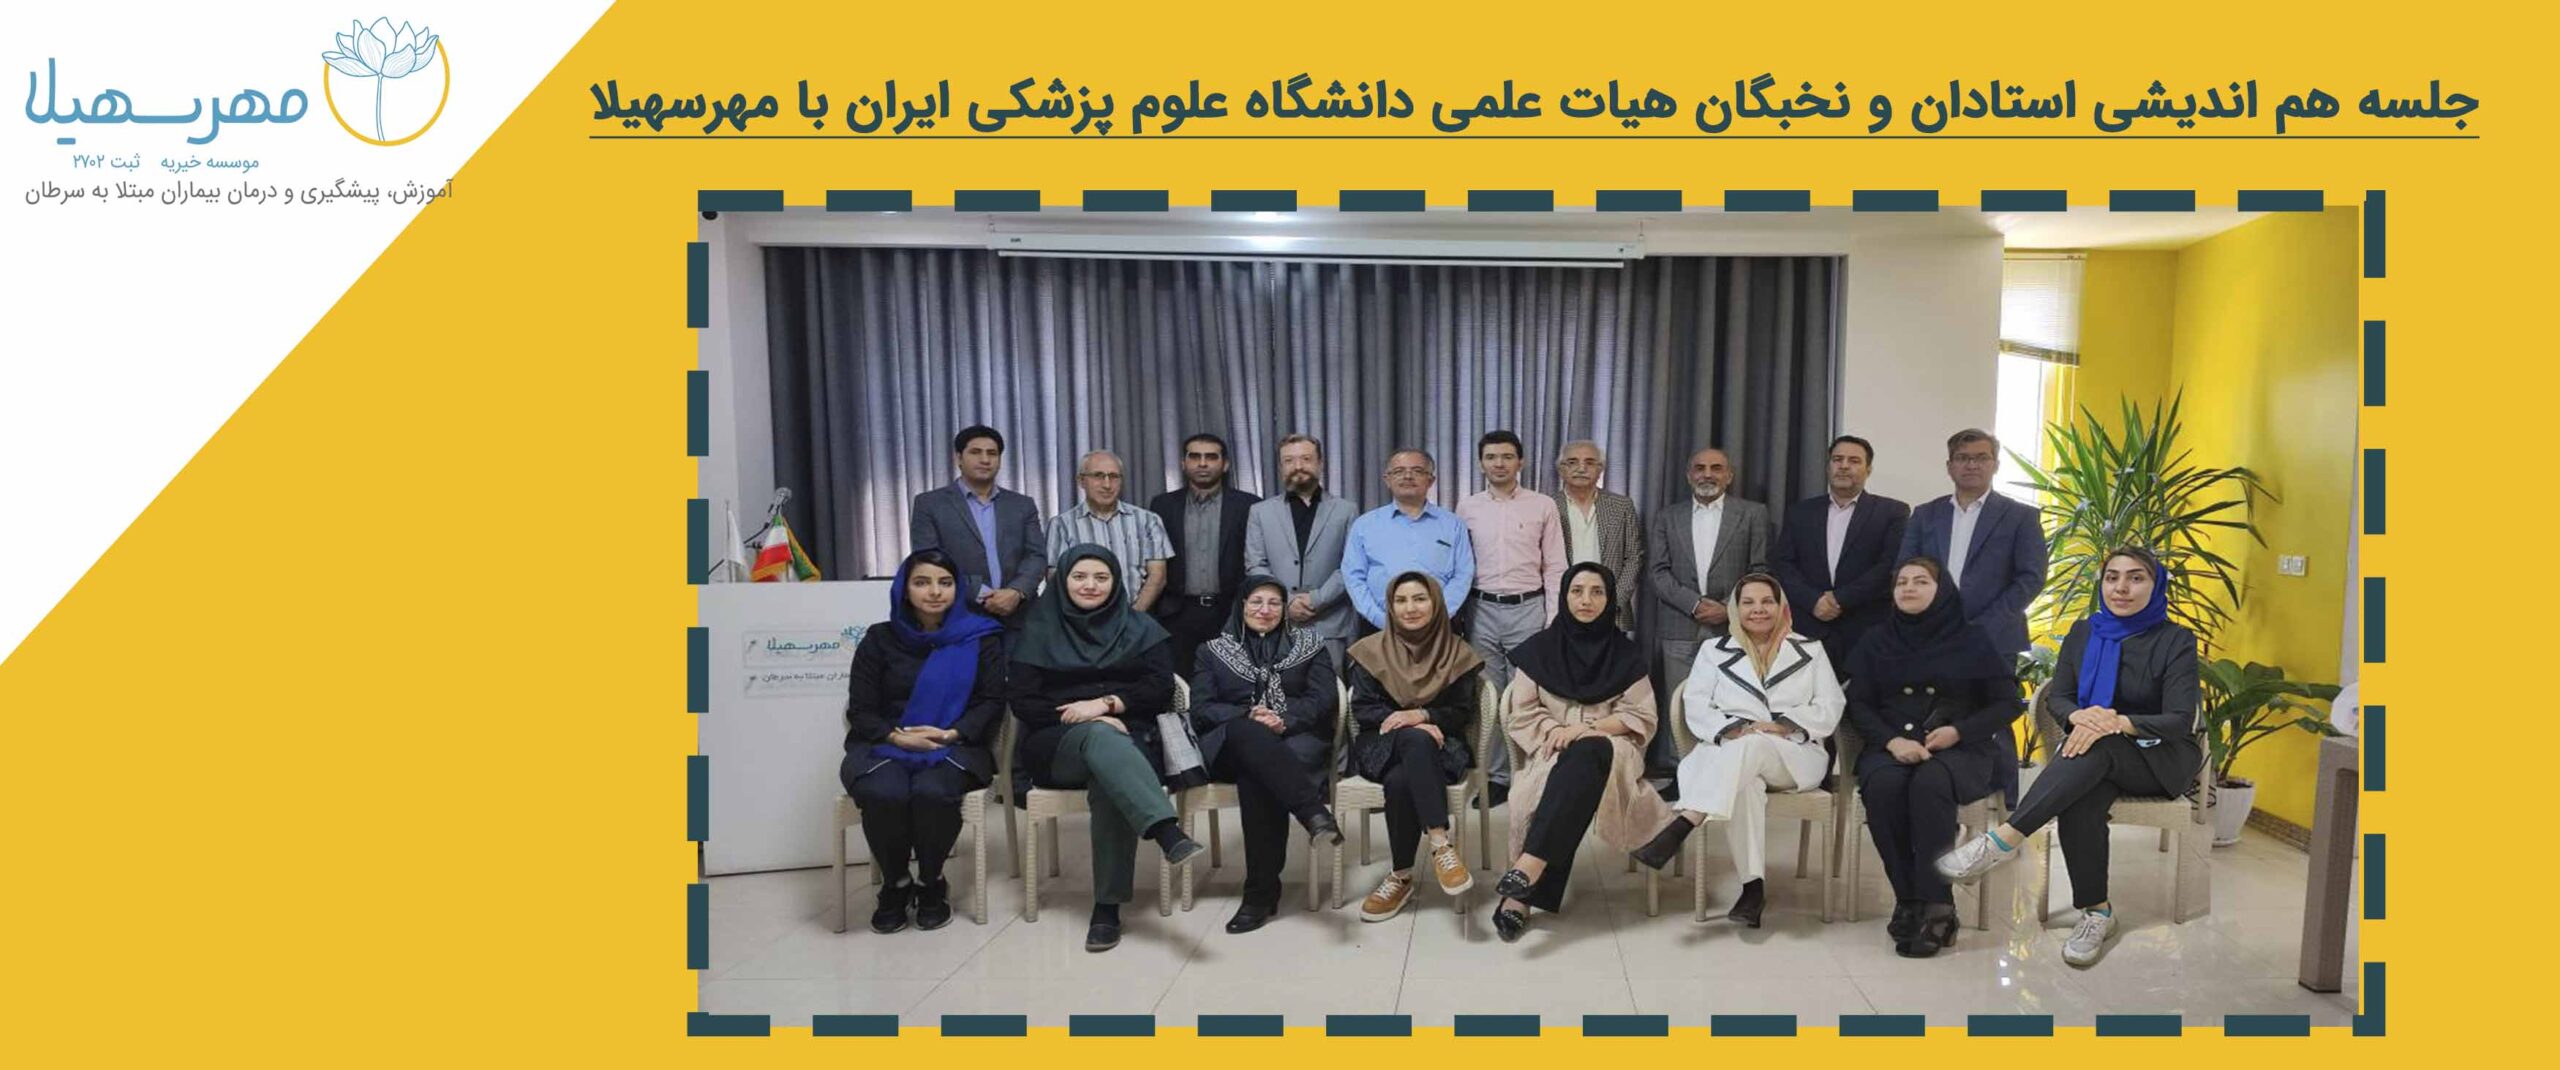 جلسه هم اندیشی استادان و نخبگان هیات علمی دانشگاه علوم پزشکی ایران با مهرسهیلا